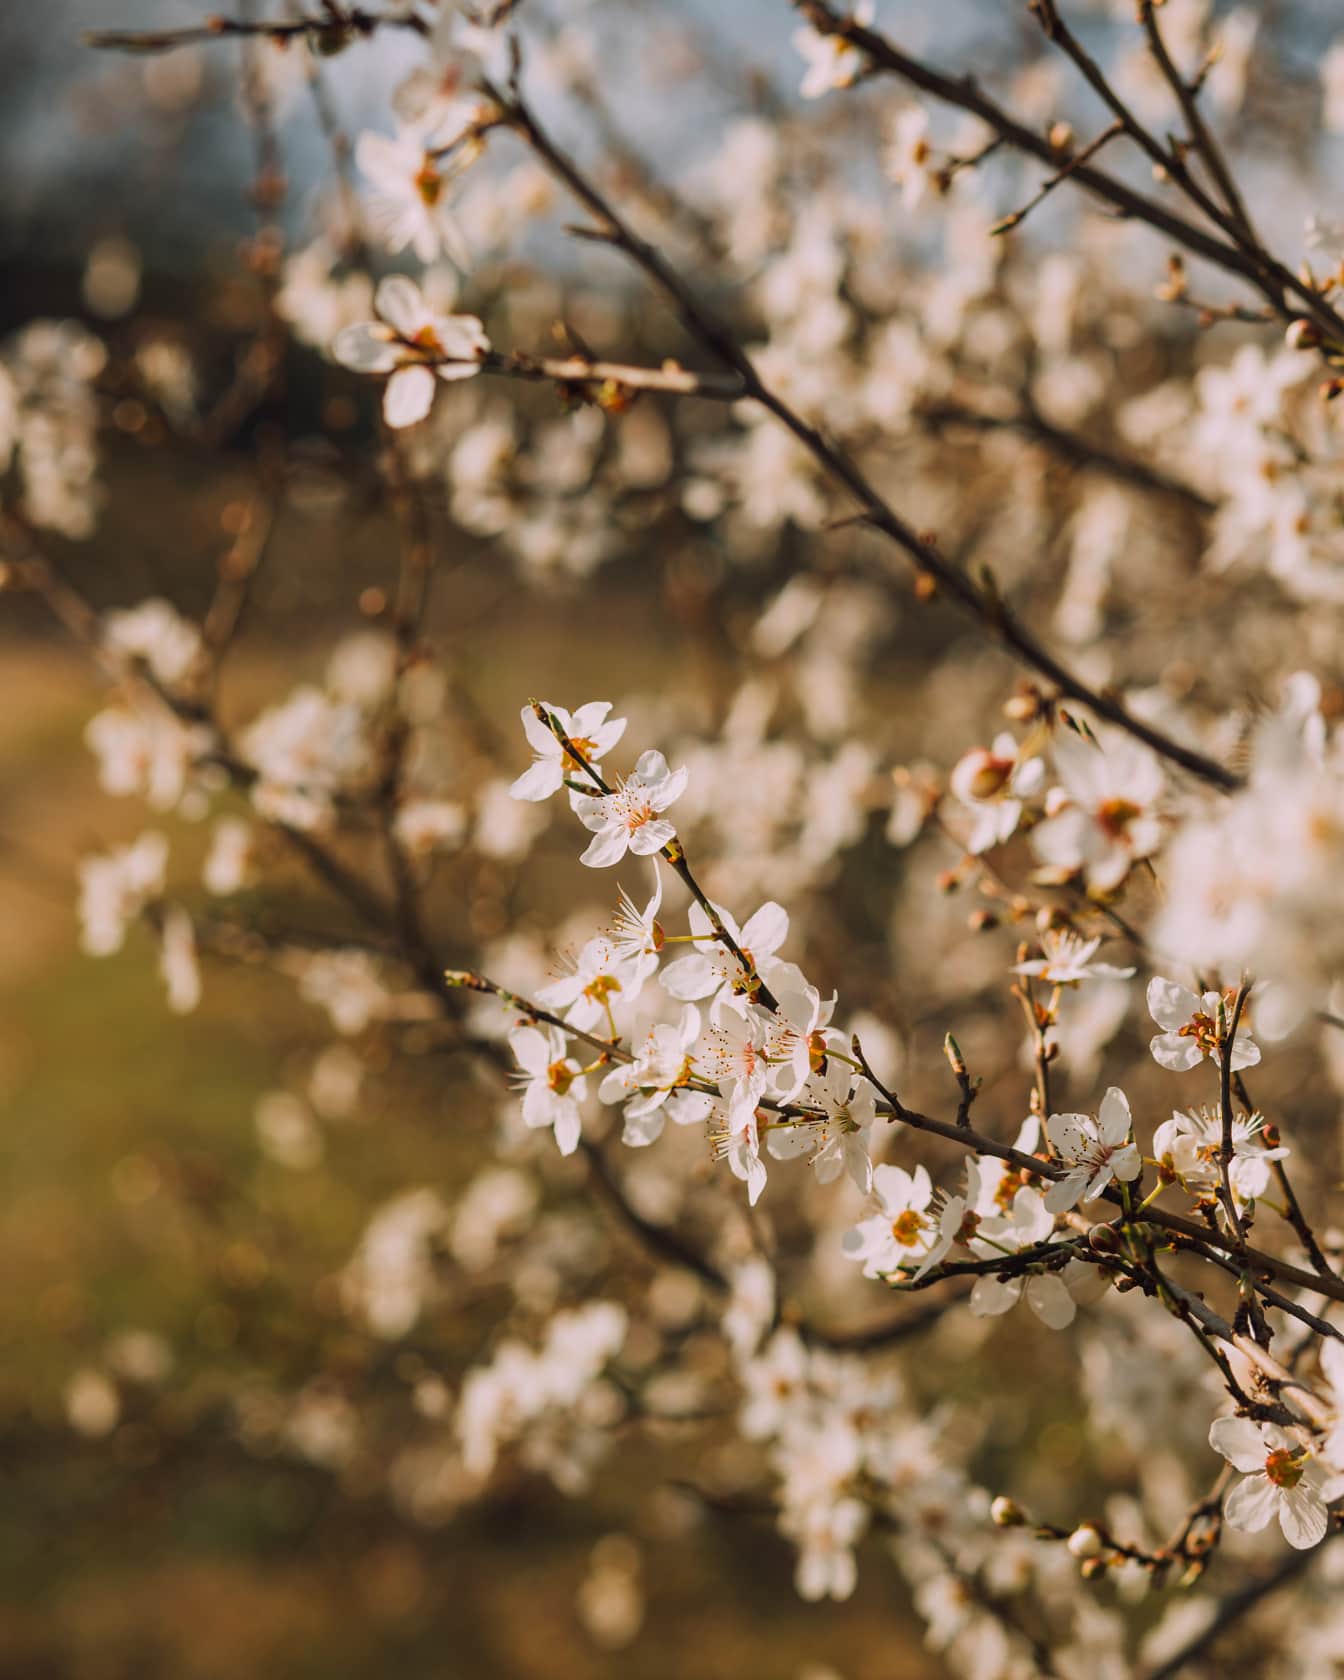 Những bông hoa nhỏ màu trắng trên cành trong vườn cây ăn quả vào mùa xuân